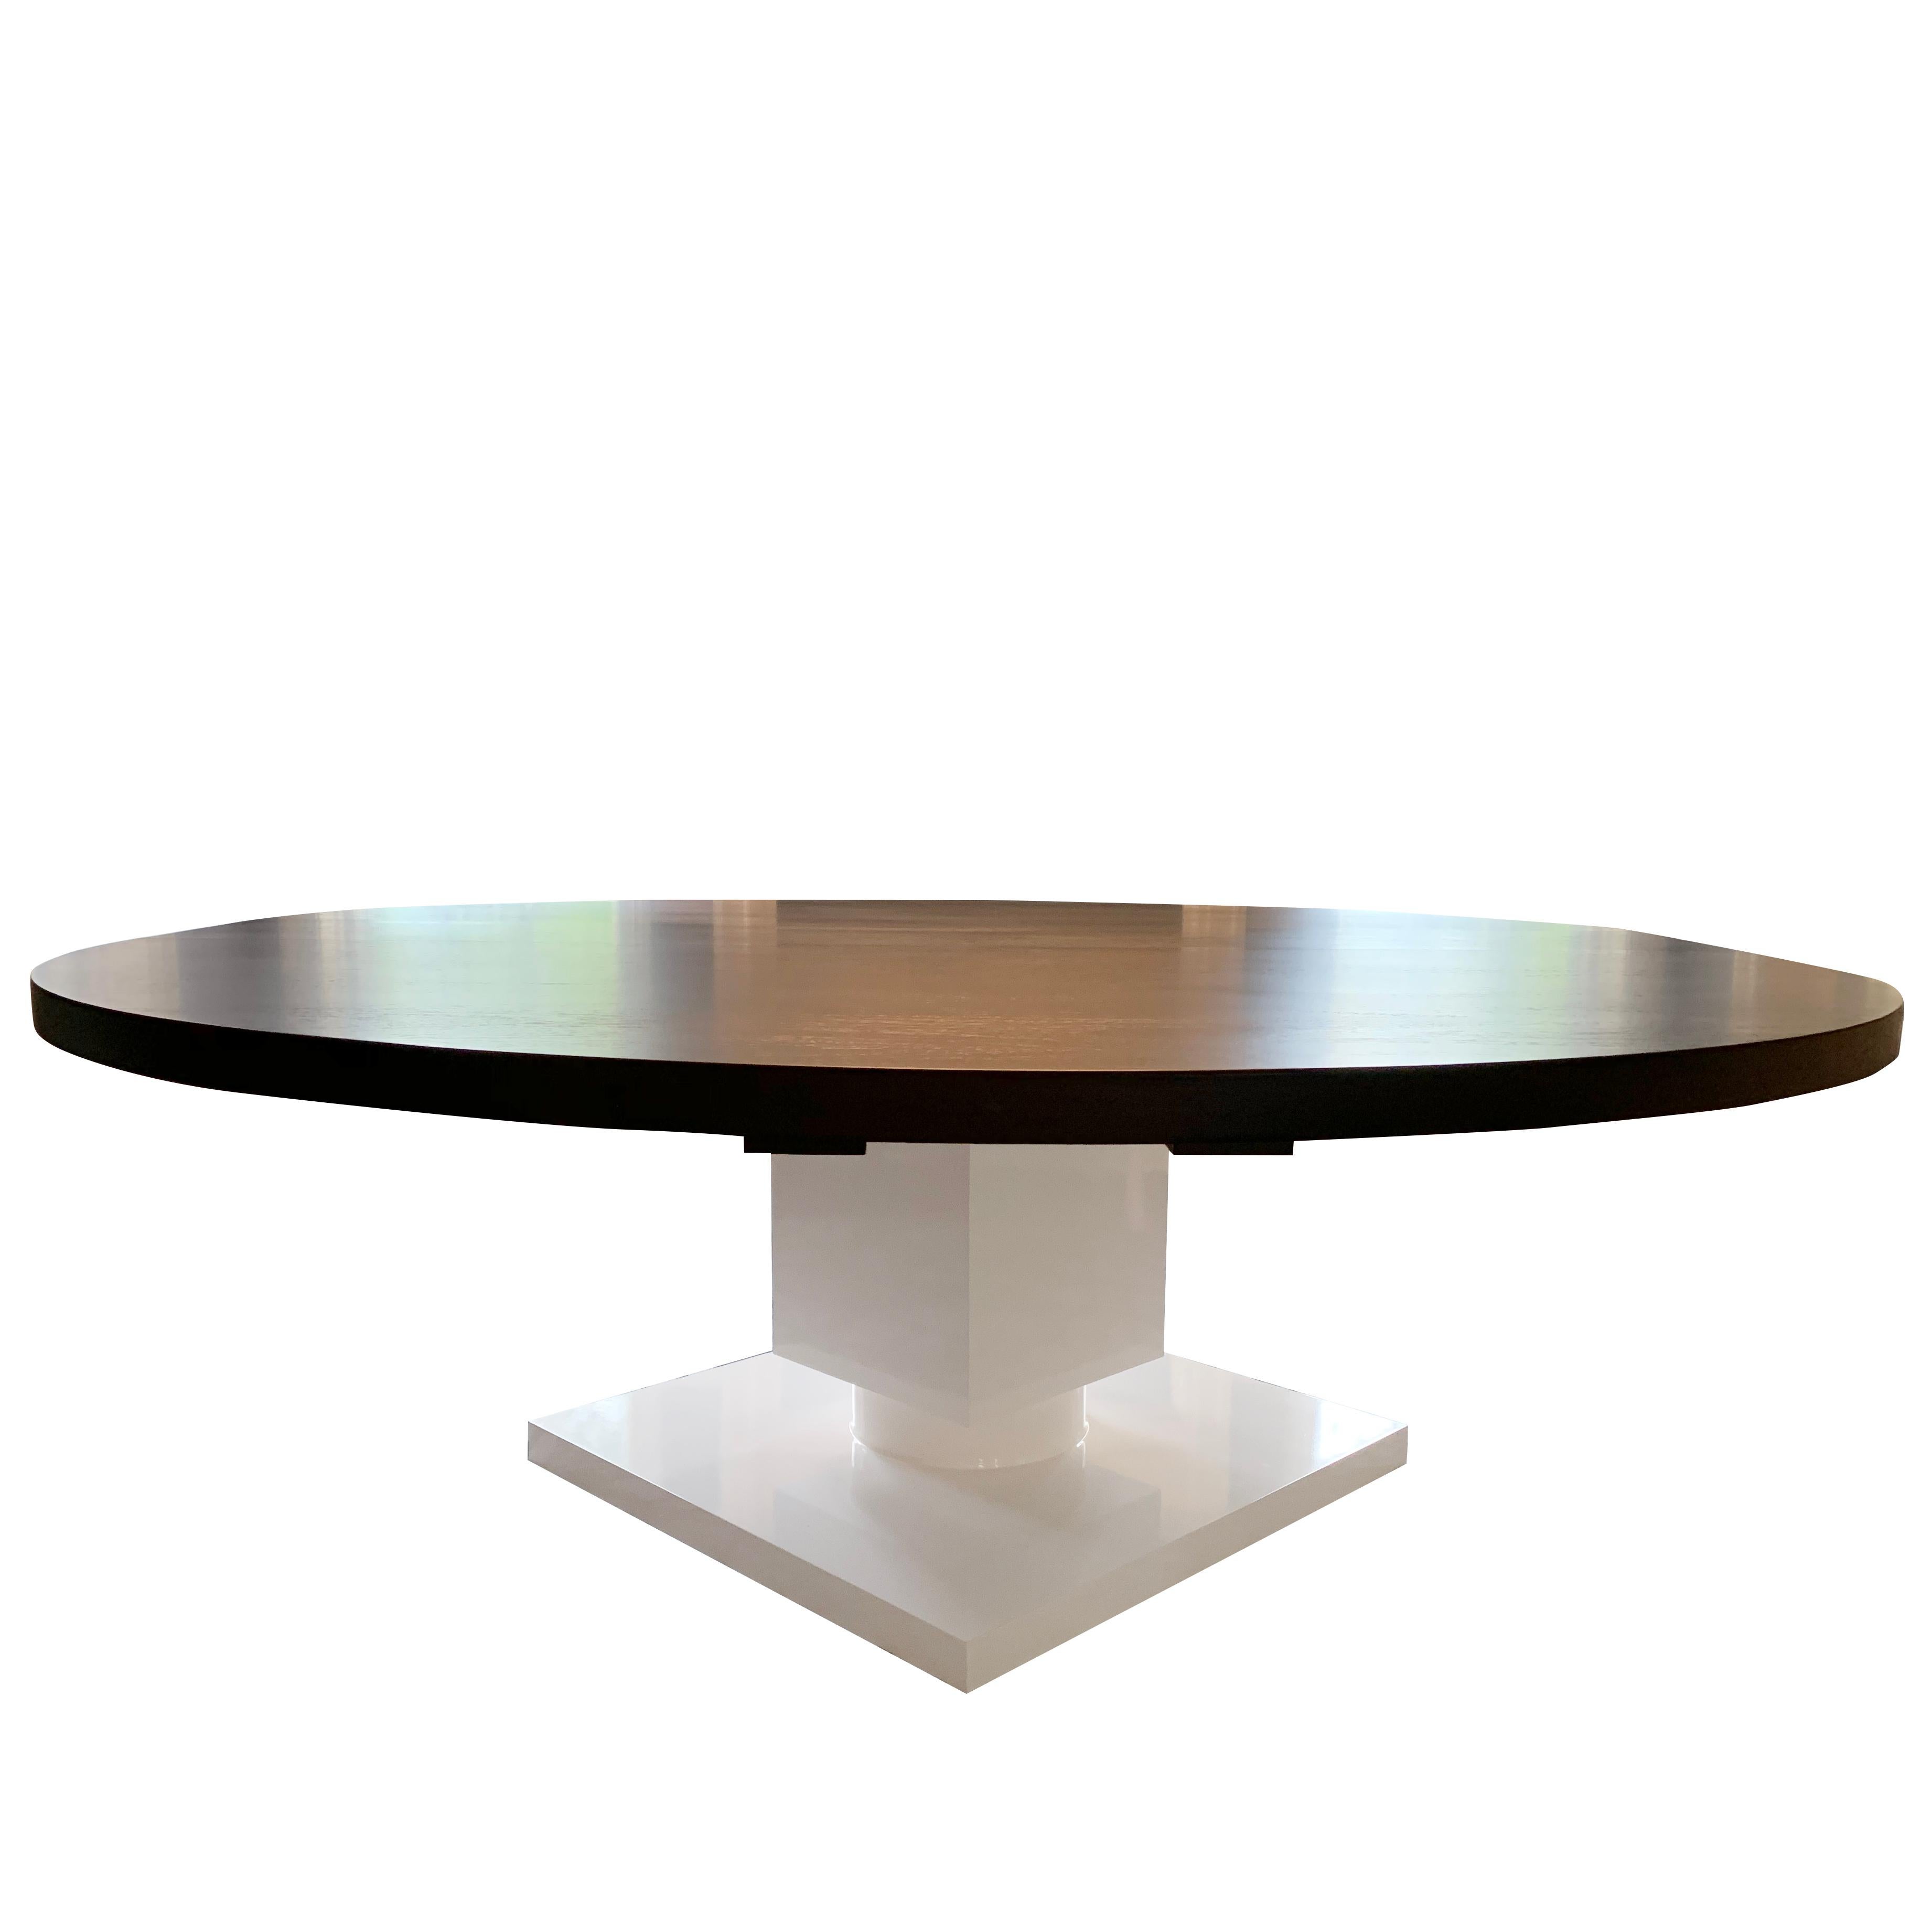 Der runde Esstisch Gabietta ist unsere moderne Variante eines traditionellen Esstisches mit Sockel. Mit einem würfelförmigen, glänzend weiß lackierten Sockel und einer runden Wenge-Holzplatte. Der Tisch kann mit oder ohne Verlängerungsplatten gebaut